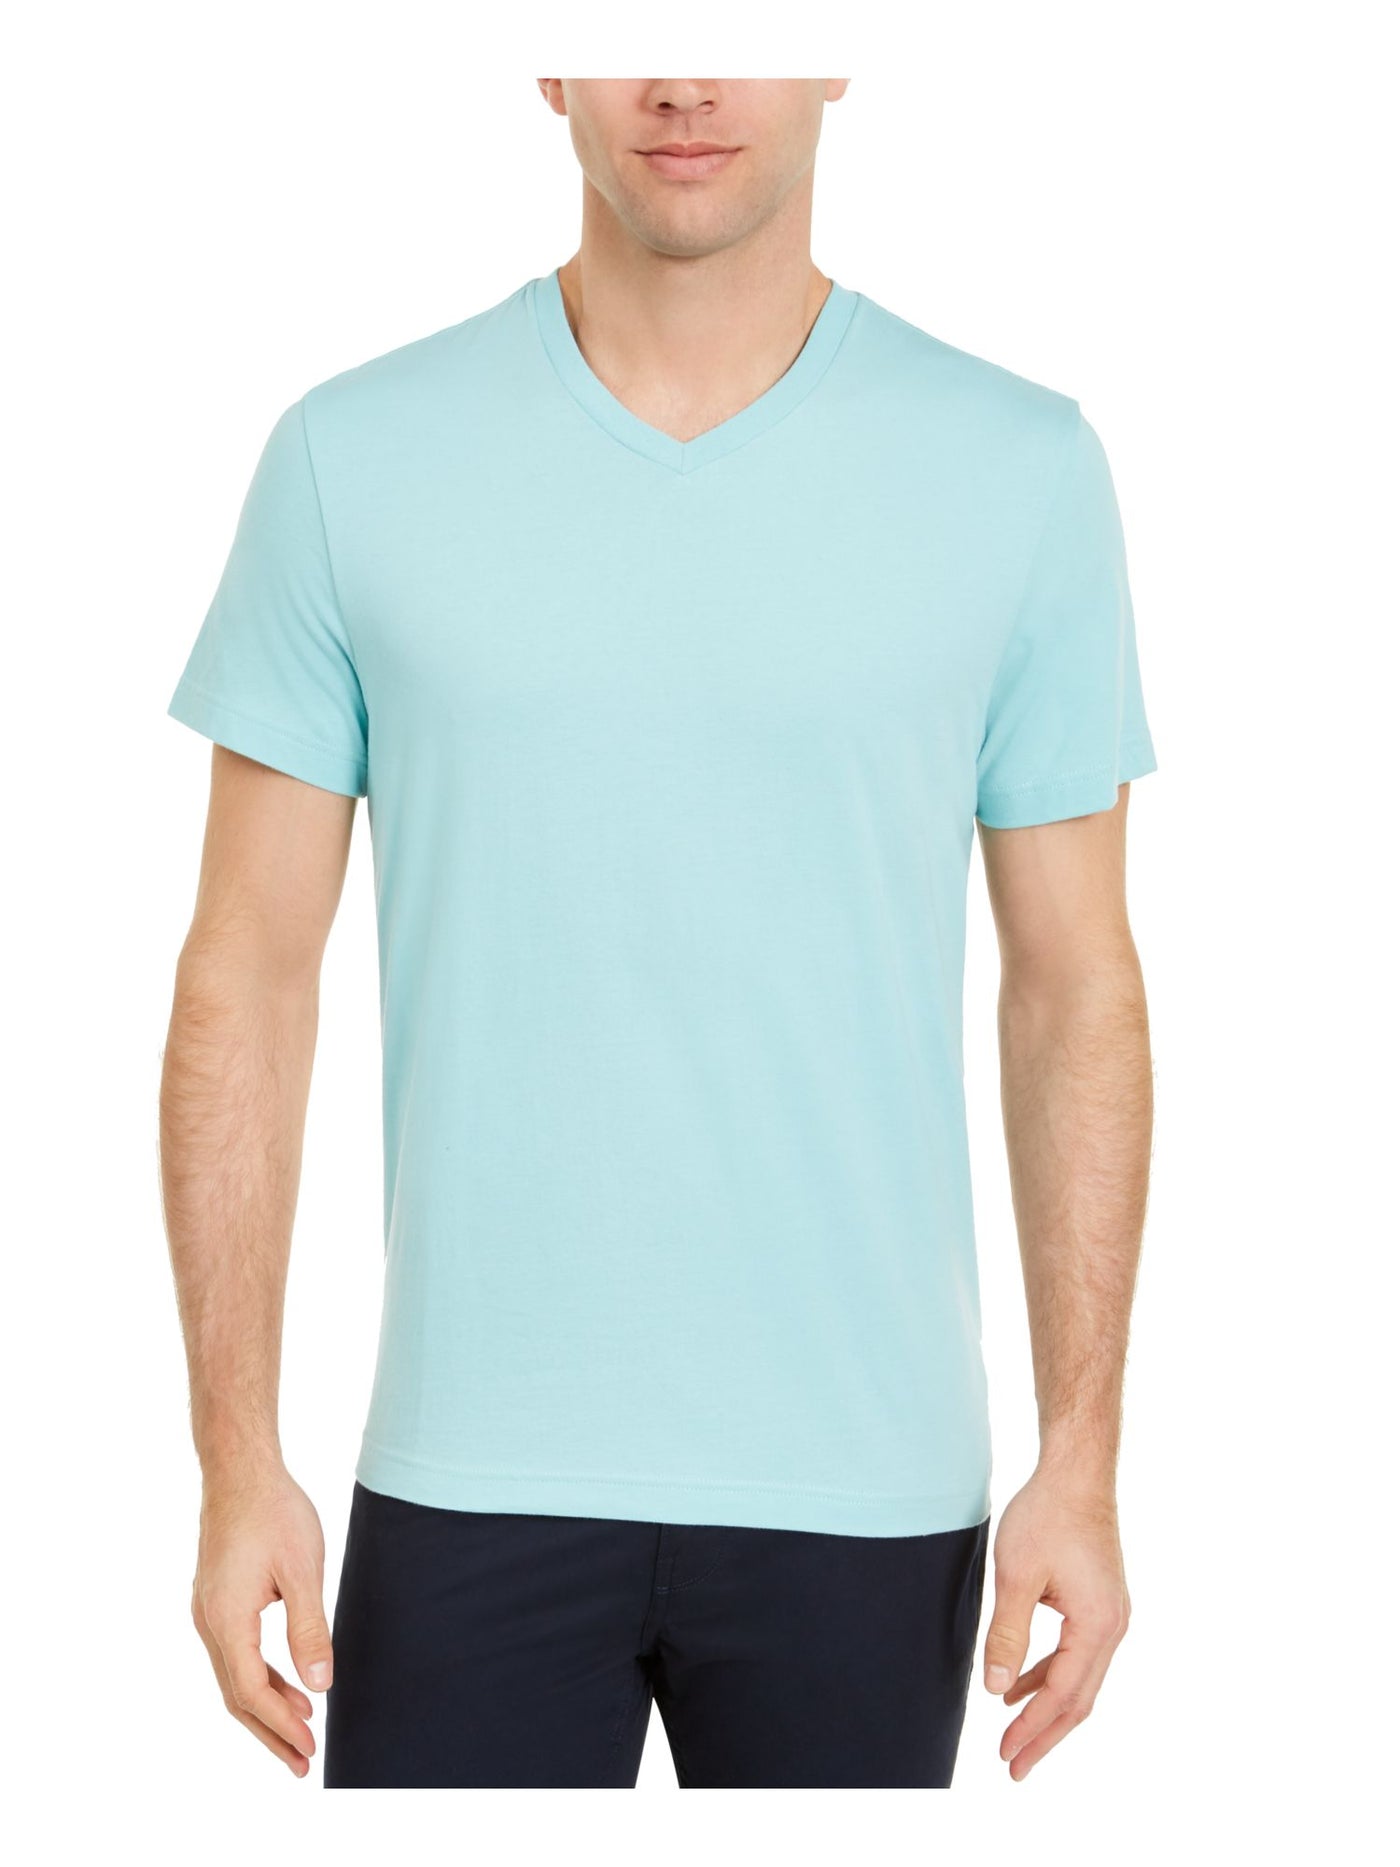 CLUBROOM Mens Aqua Classic Fit Cotton T-Shirt S